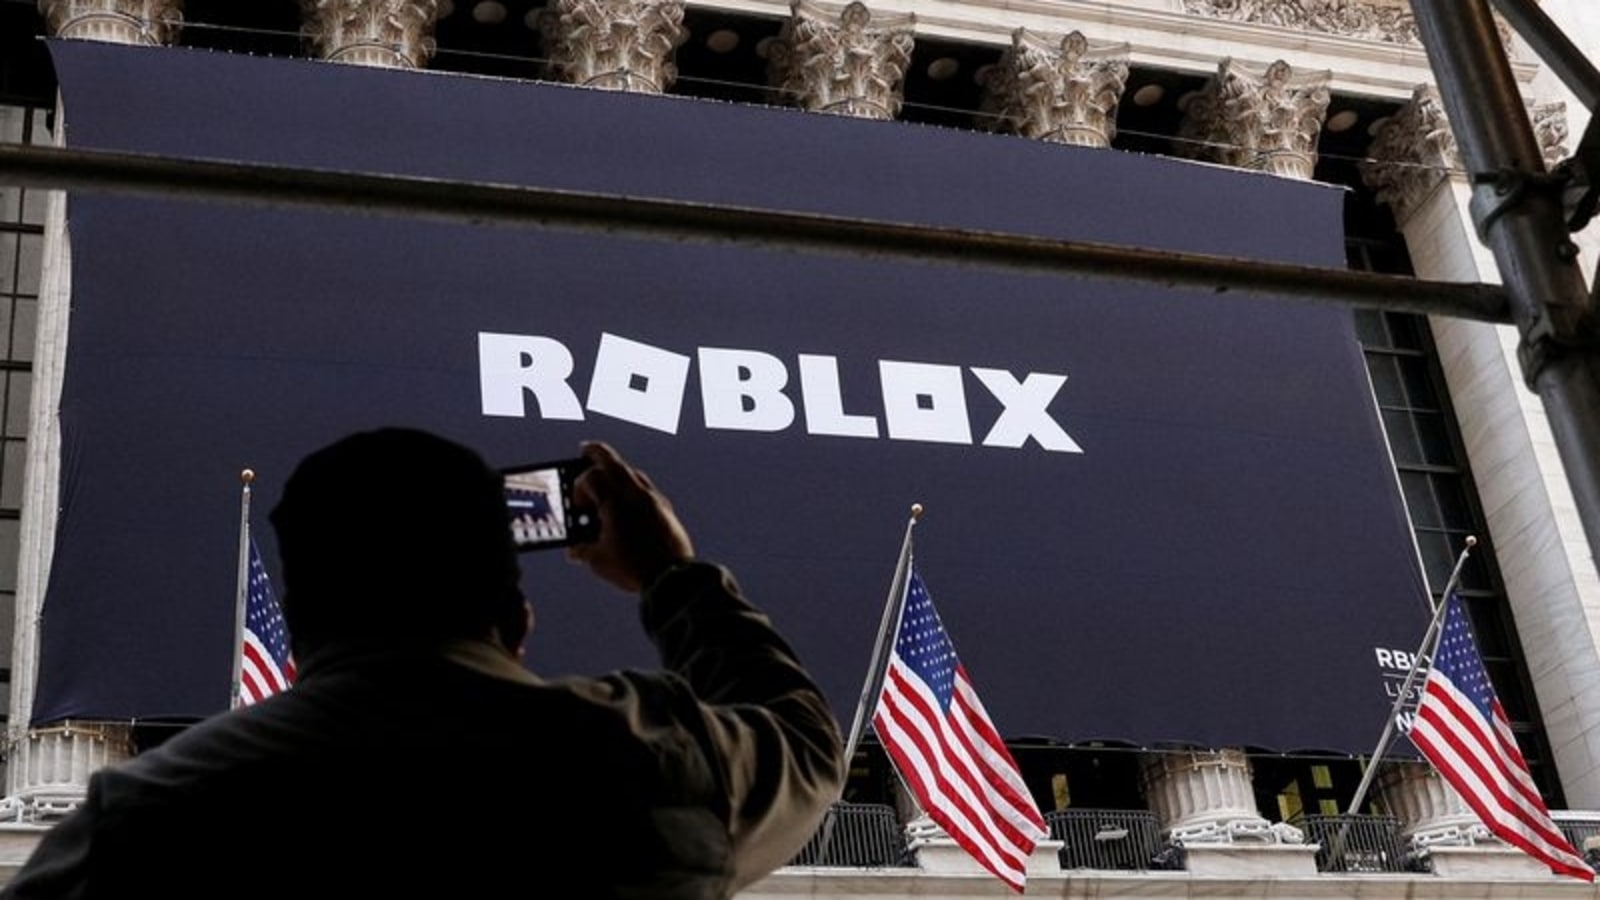 Roblox games platform plans European expansion